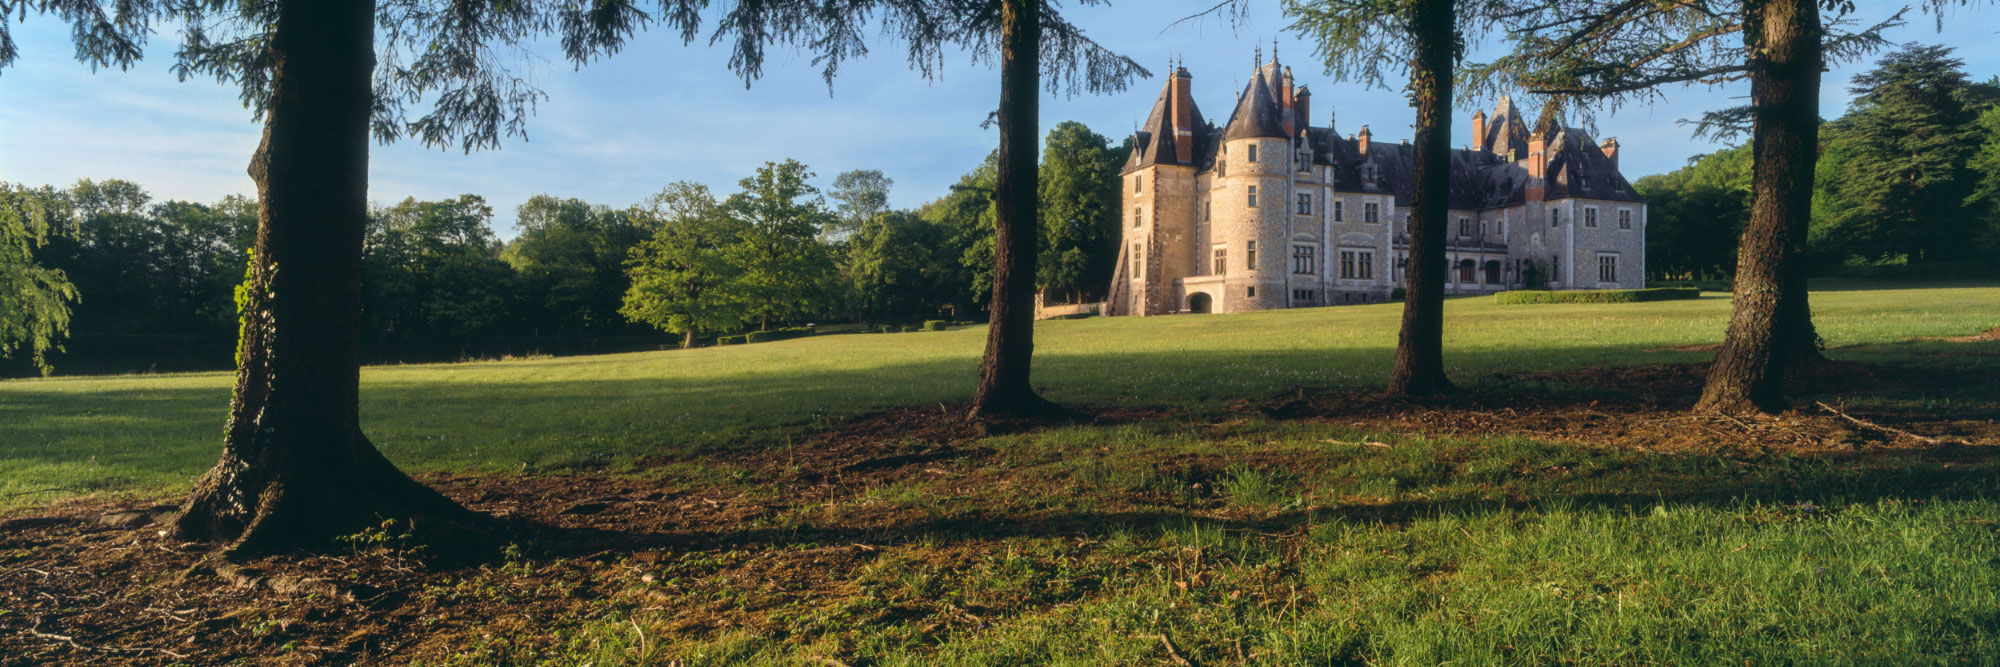 Château de La Verrerie, Aubigny-sur-Nère